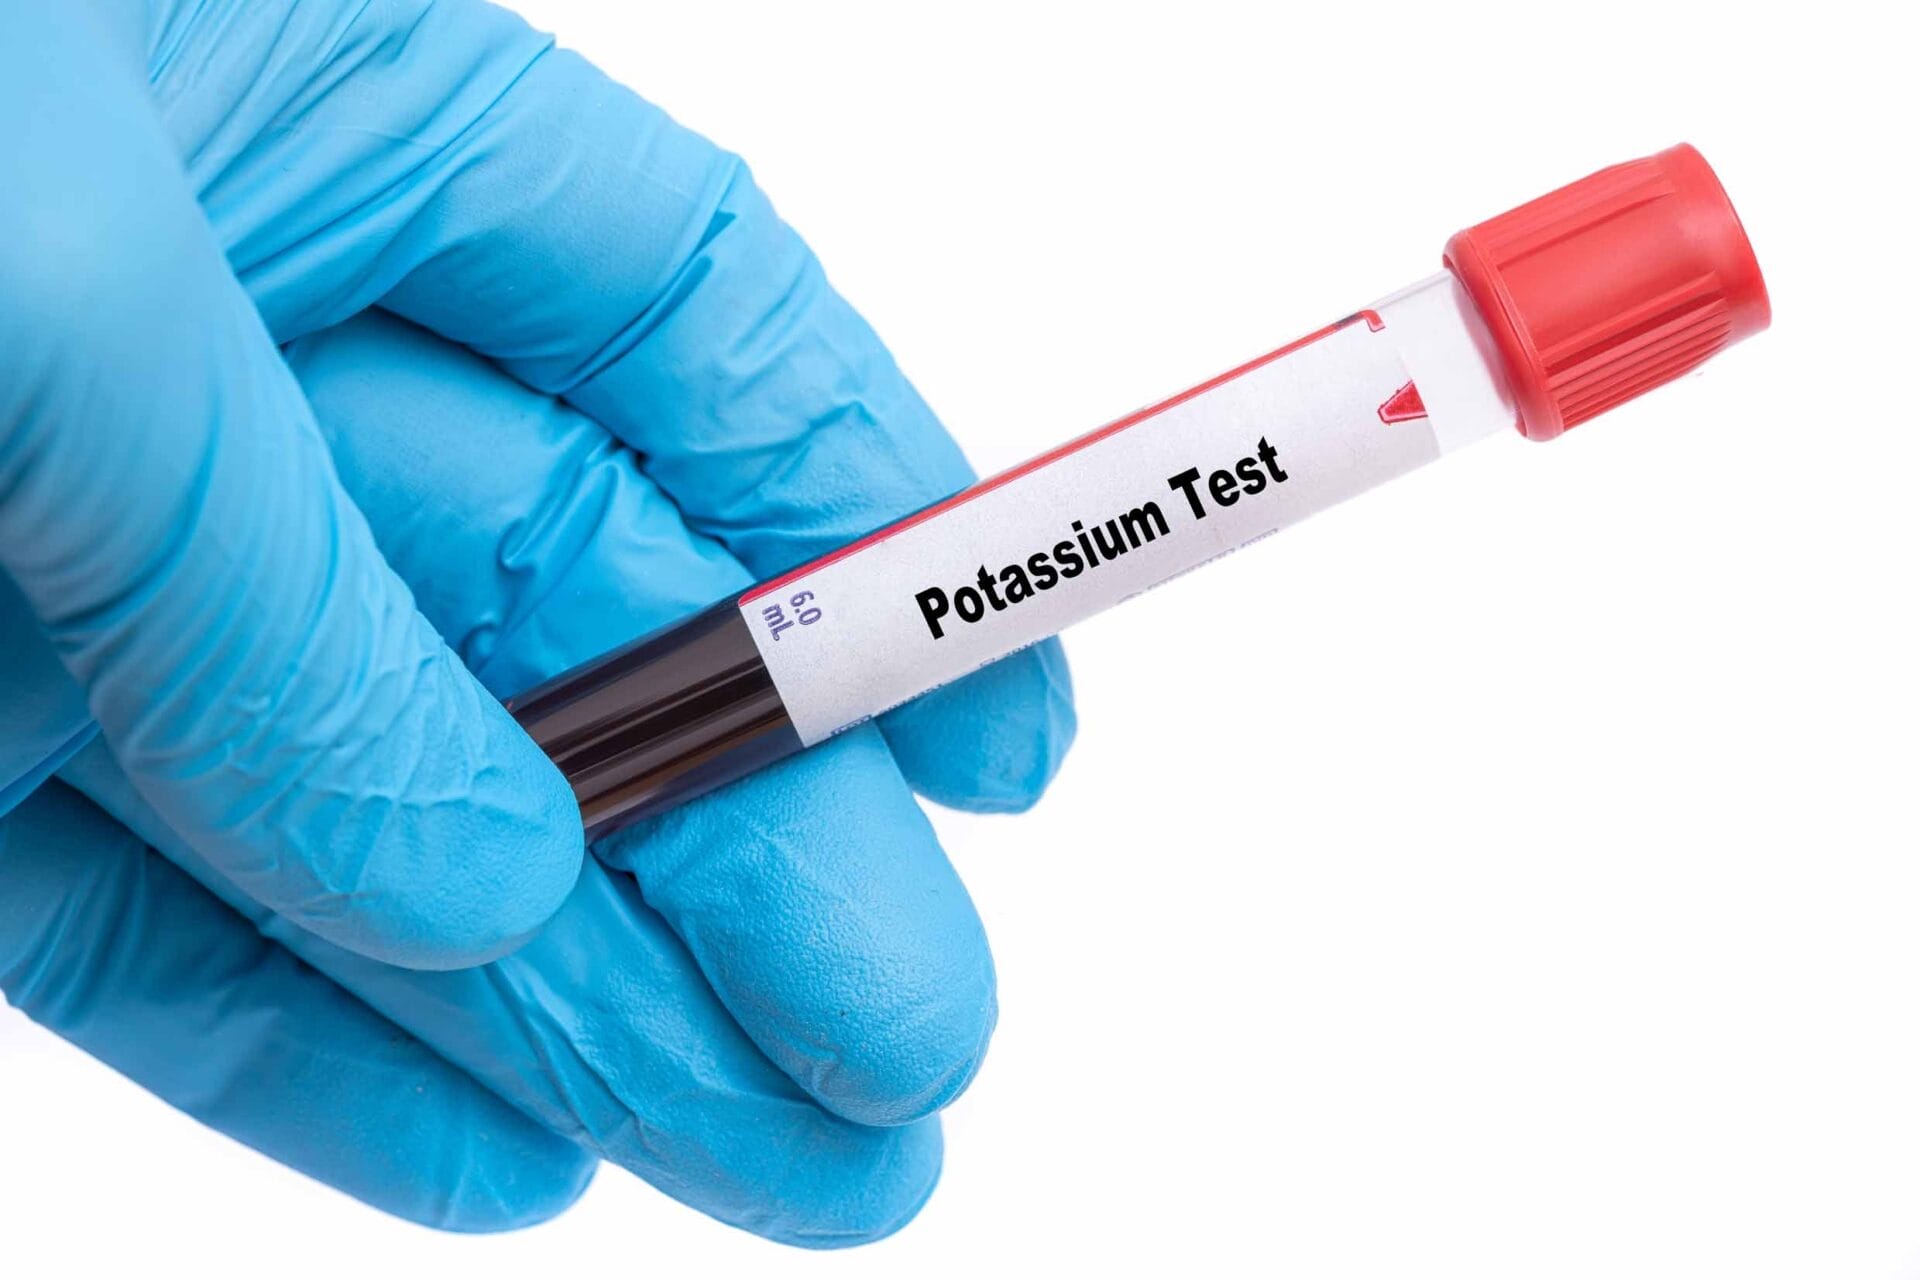 Potassium Serum Test in Hyderabad